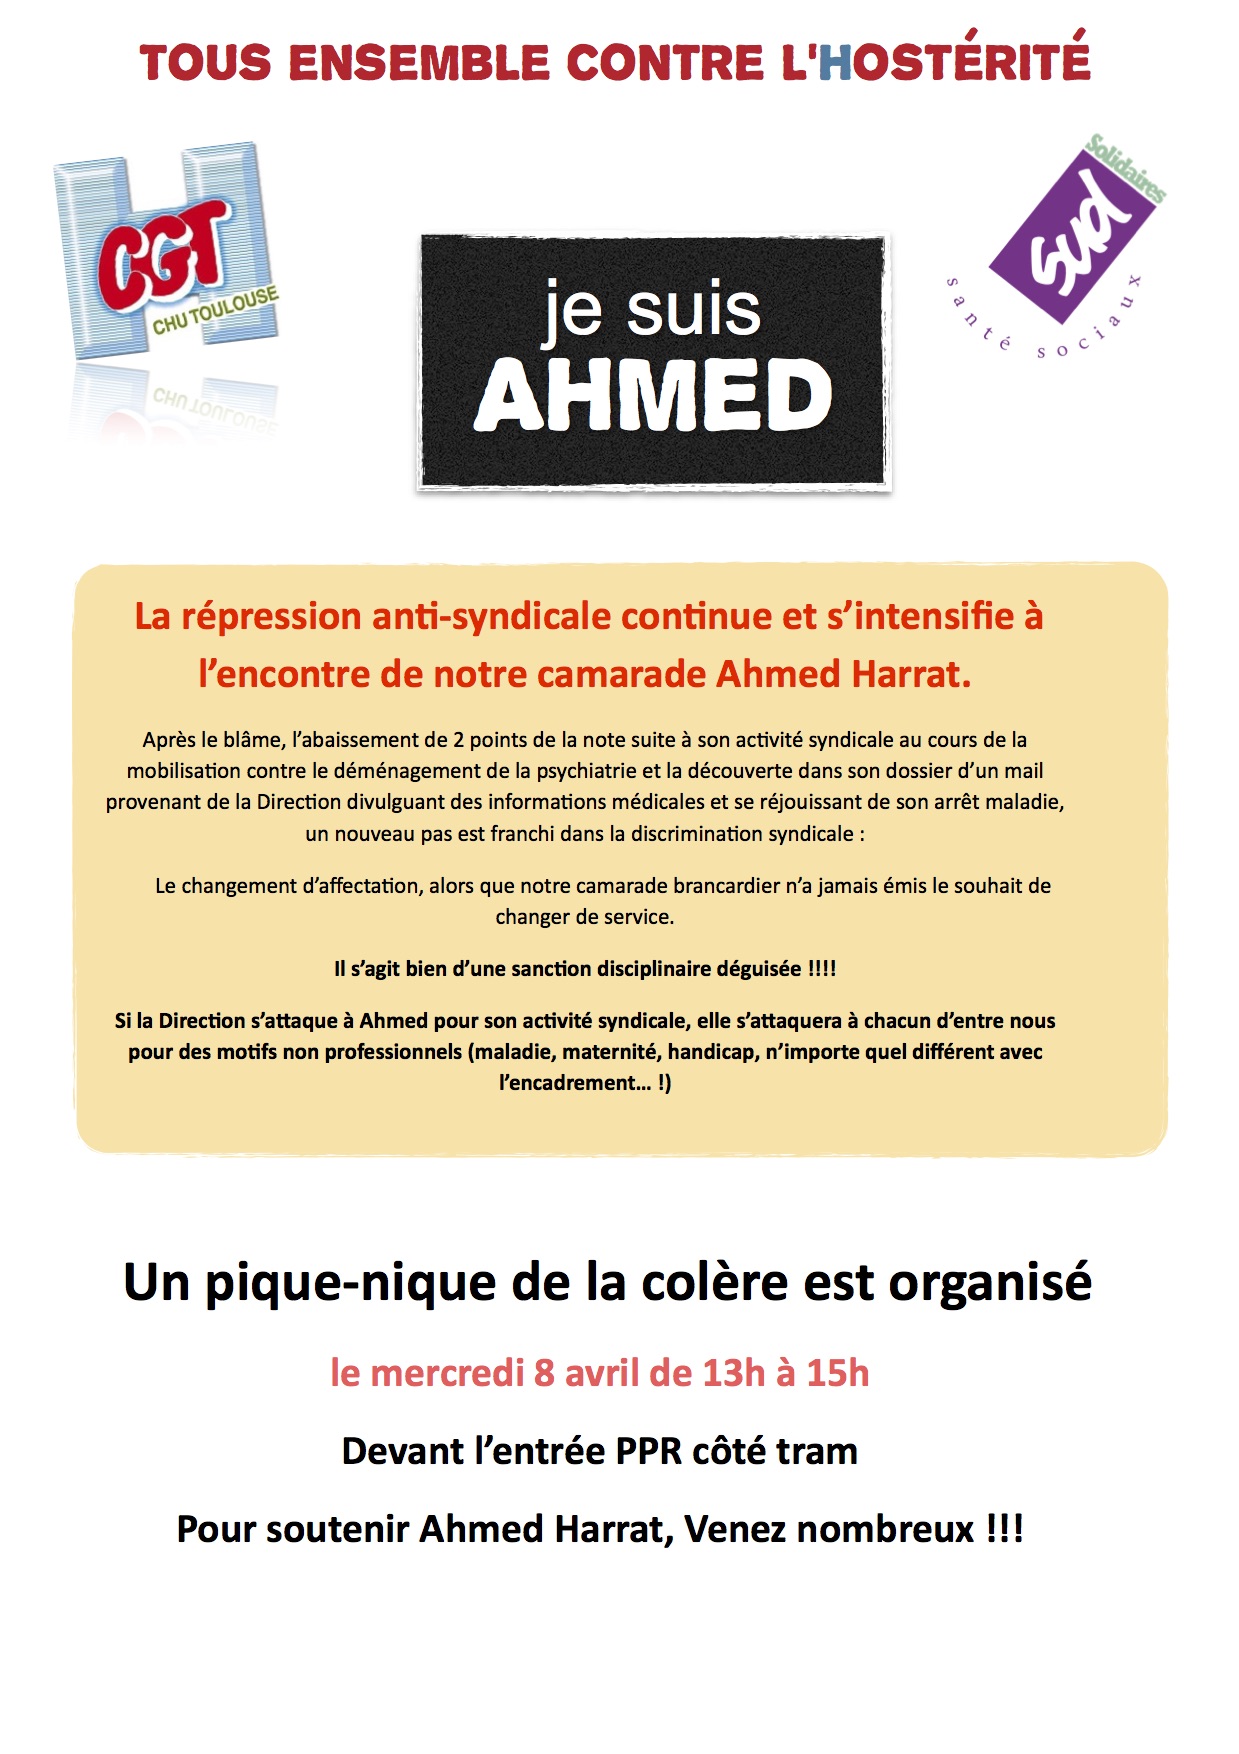 Je suis AHMED : Le 8 avril contre la répression antisyndicale au CHU